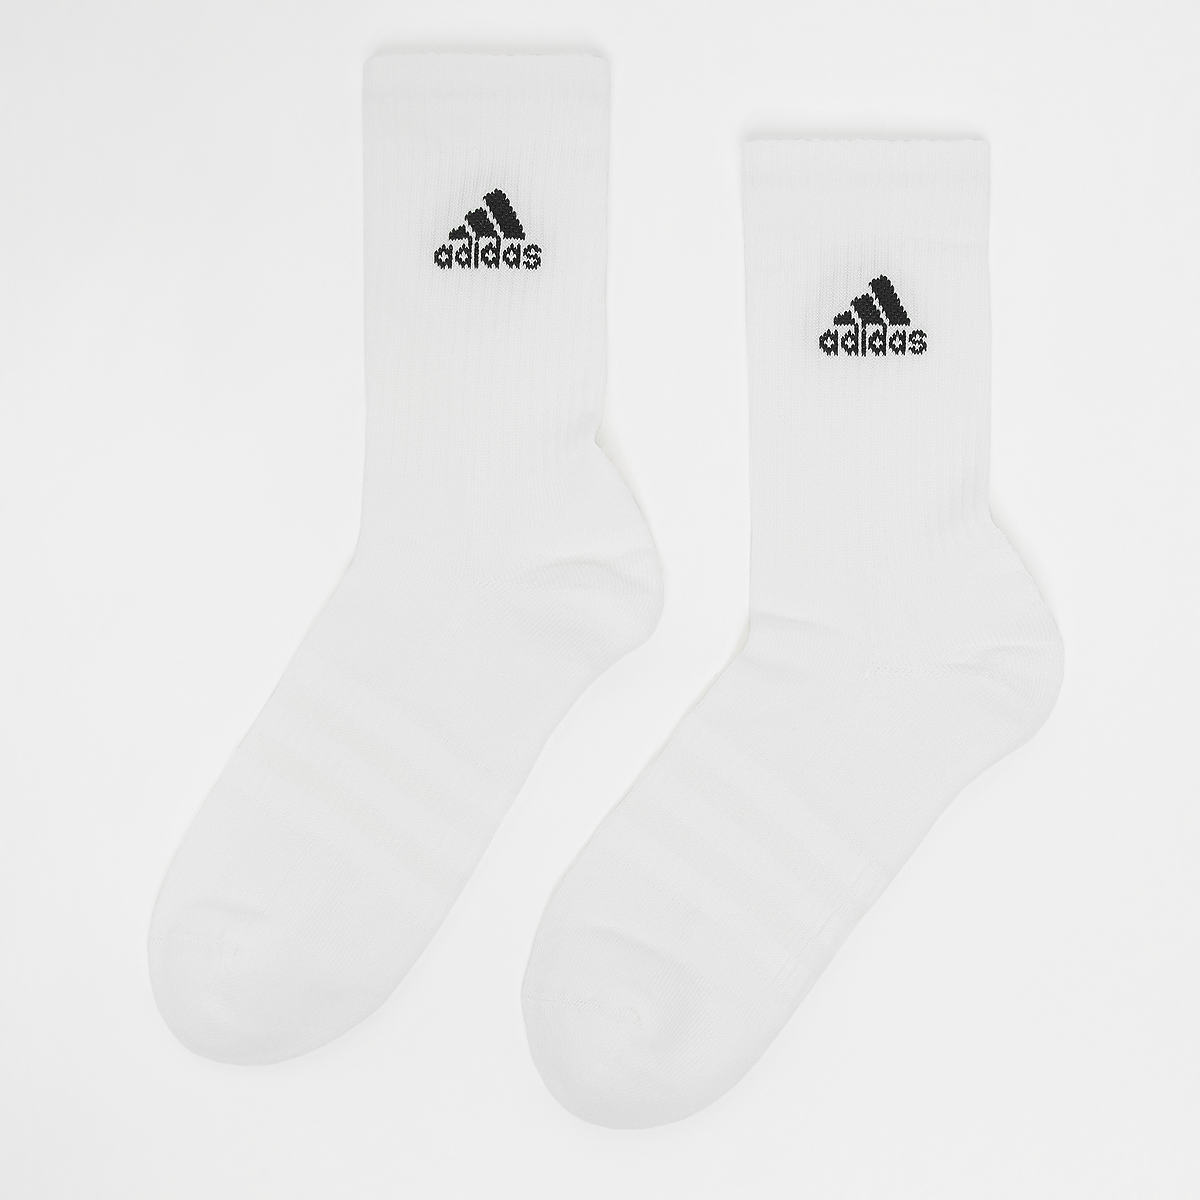 Adidas Originals Crew Sportswear Sokken (6 Pack) Lang Heren white black maat: 39-42 beschikbare maaten:35-38 39-42 37-39 40-42 43-45